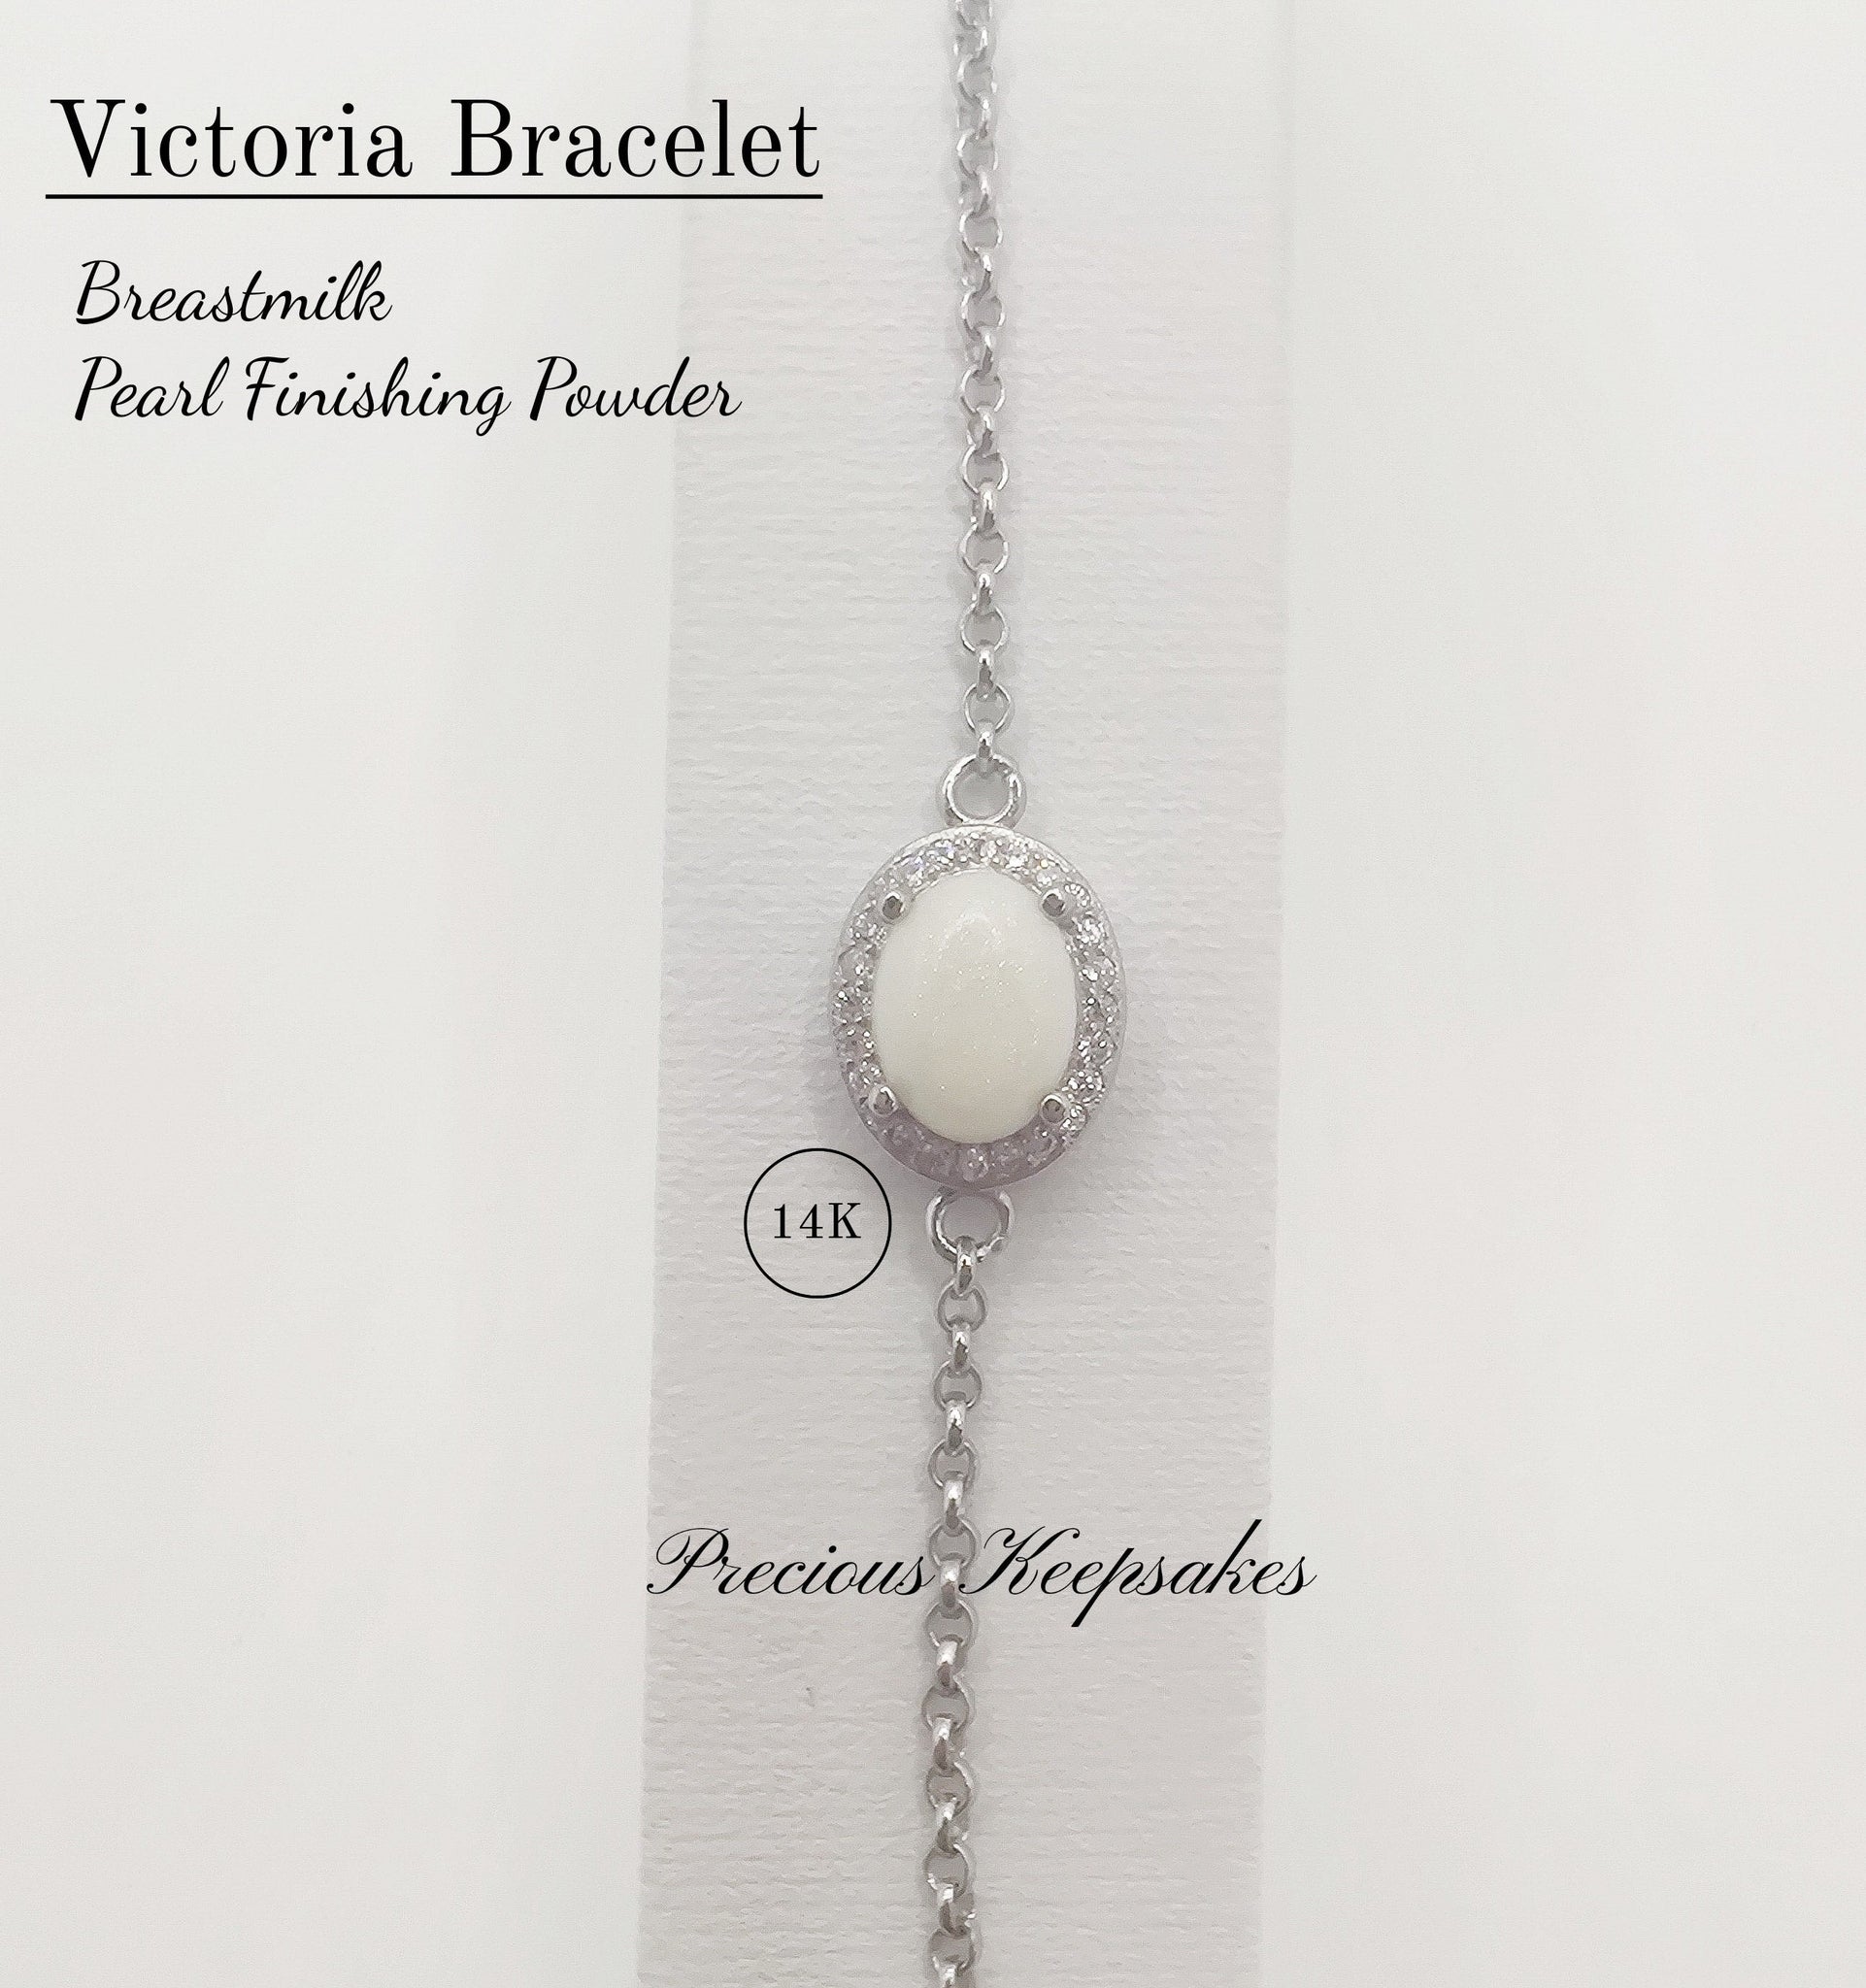 Victoria Bracelet 14K